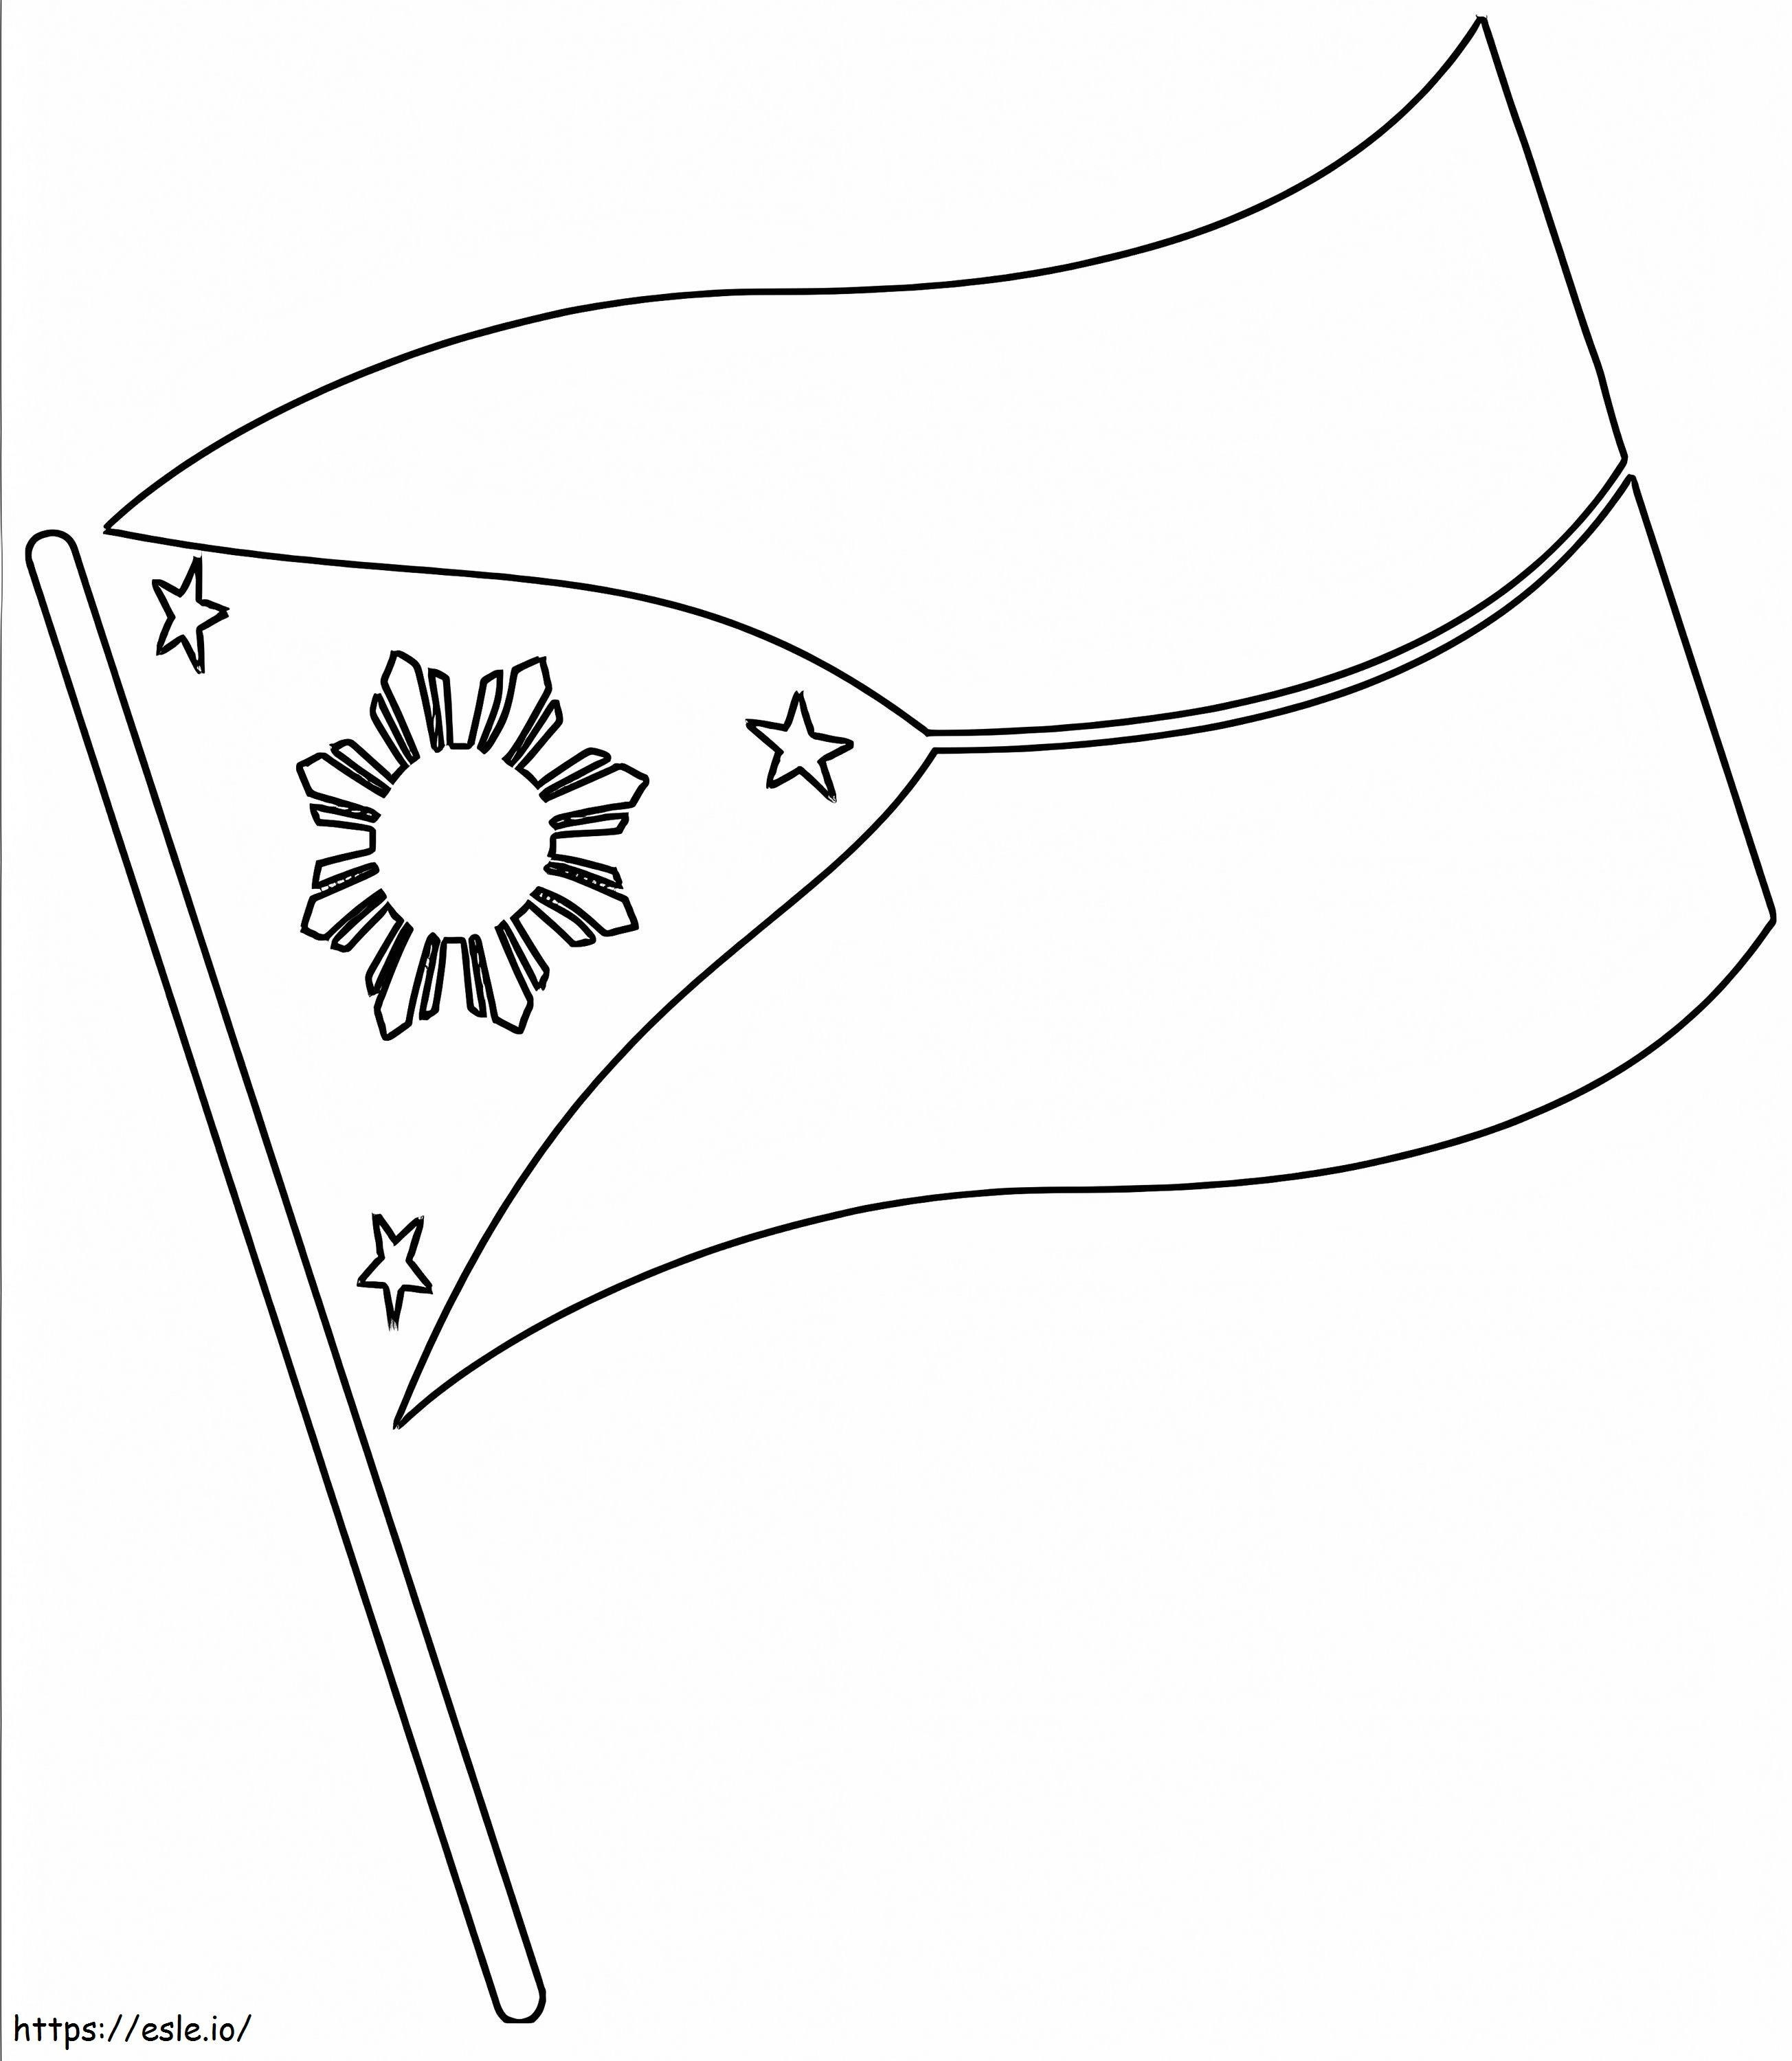 Philippinen-Flagge 2 ausmalbilder